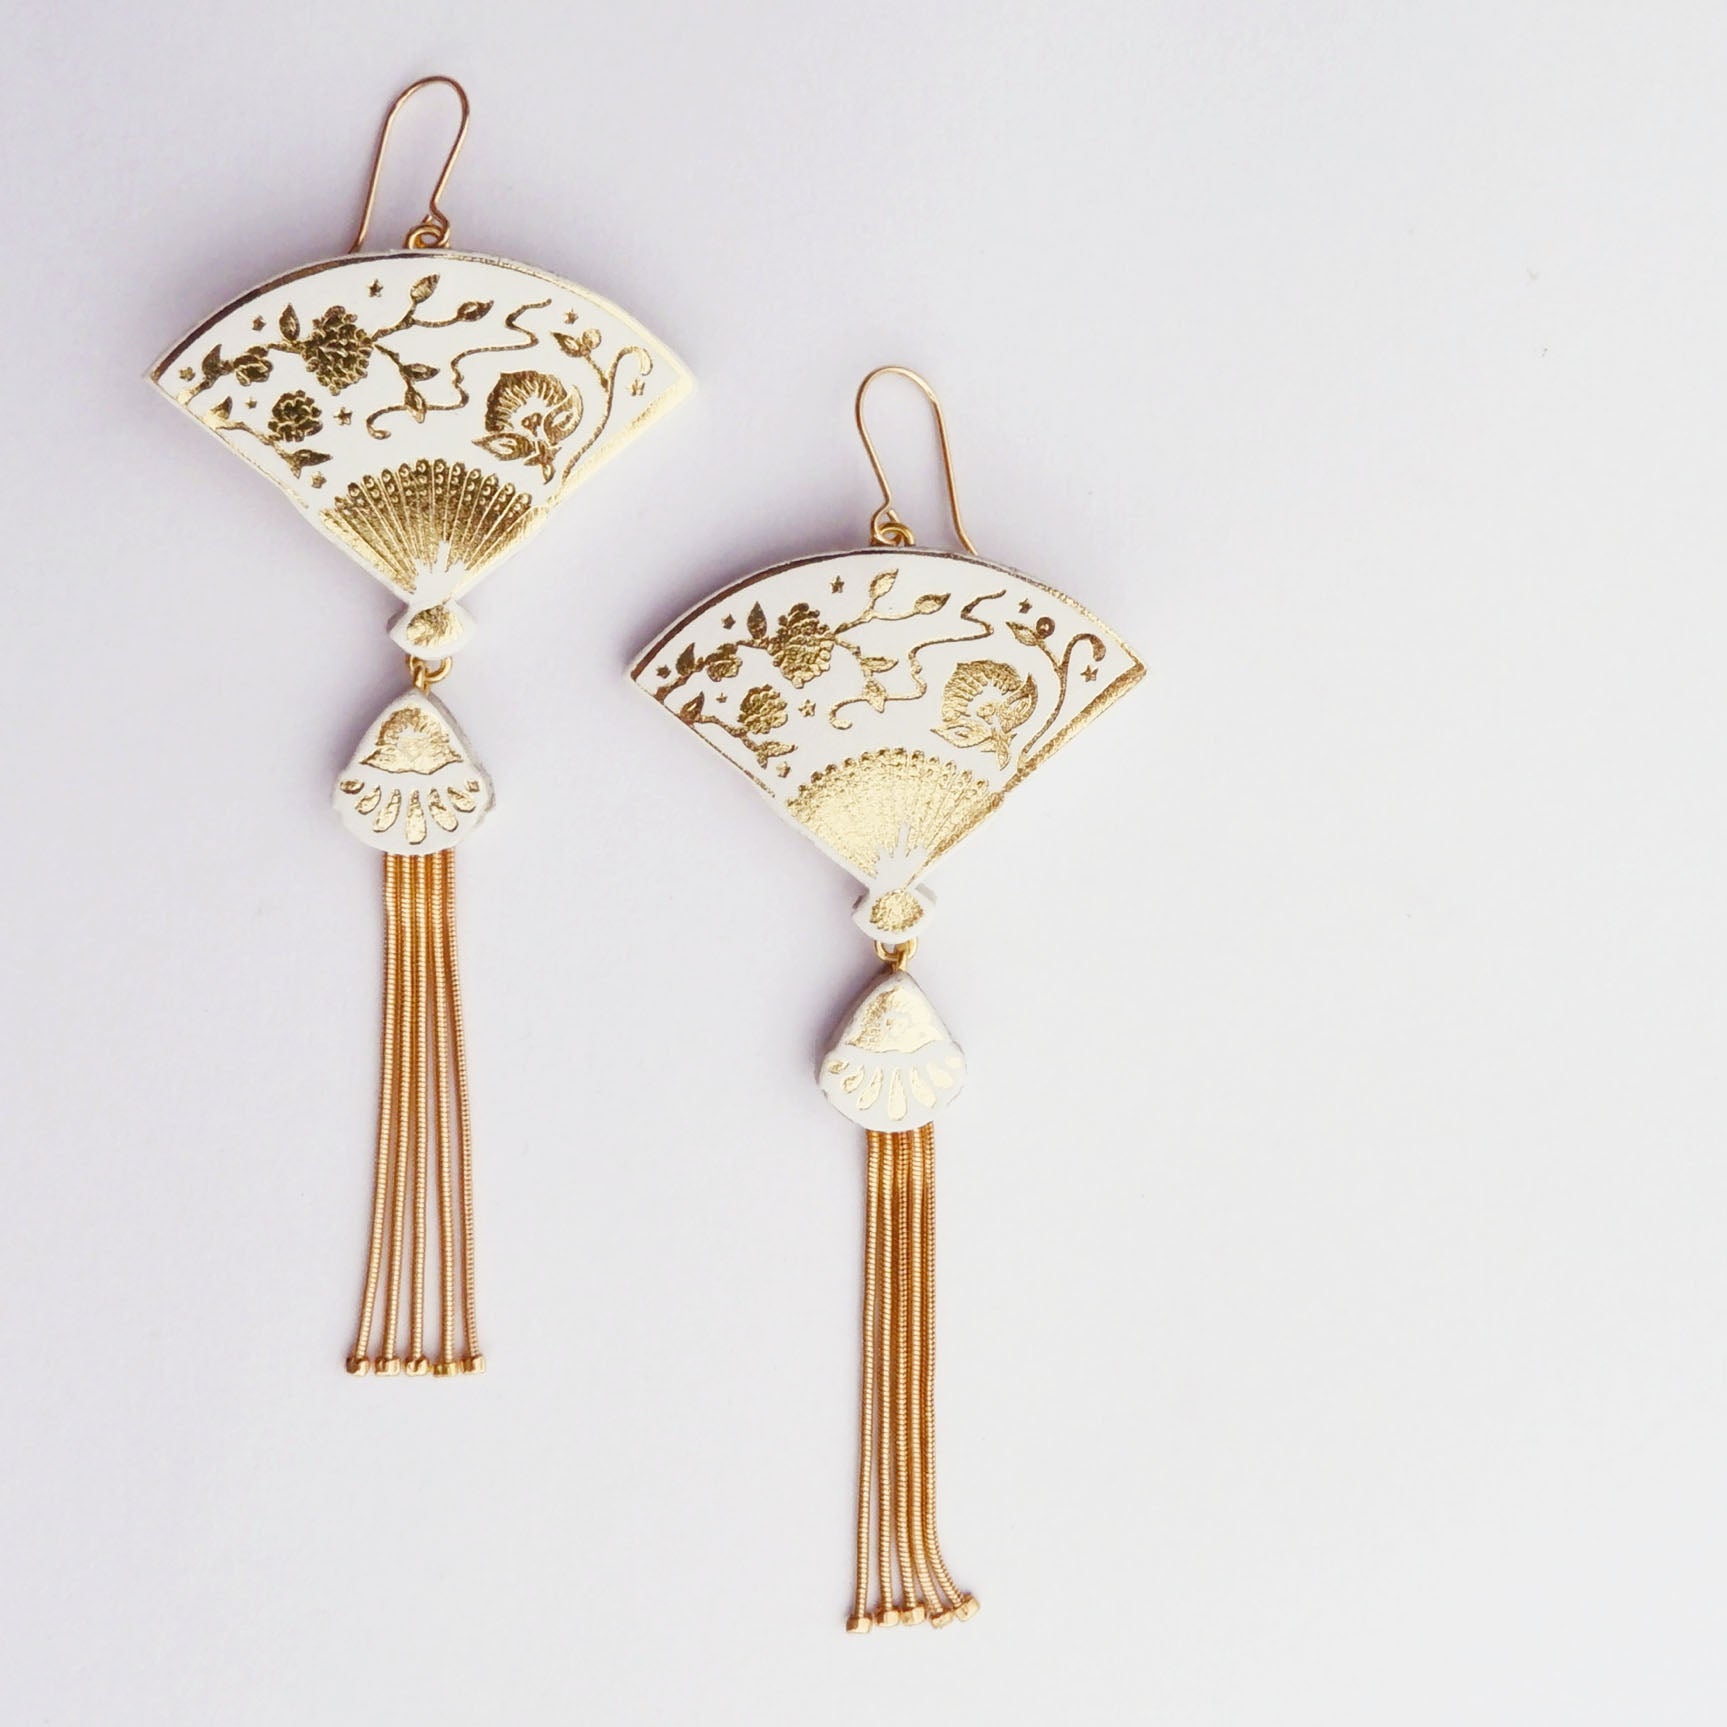 tasselled fan earrings in white & gold